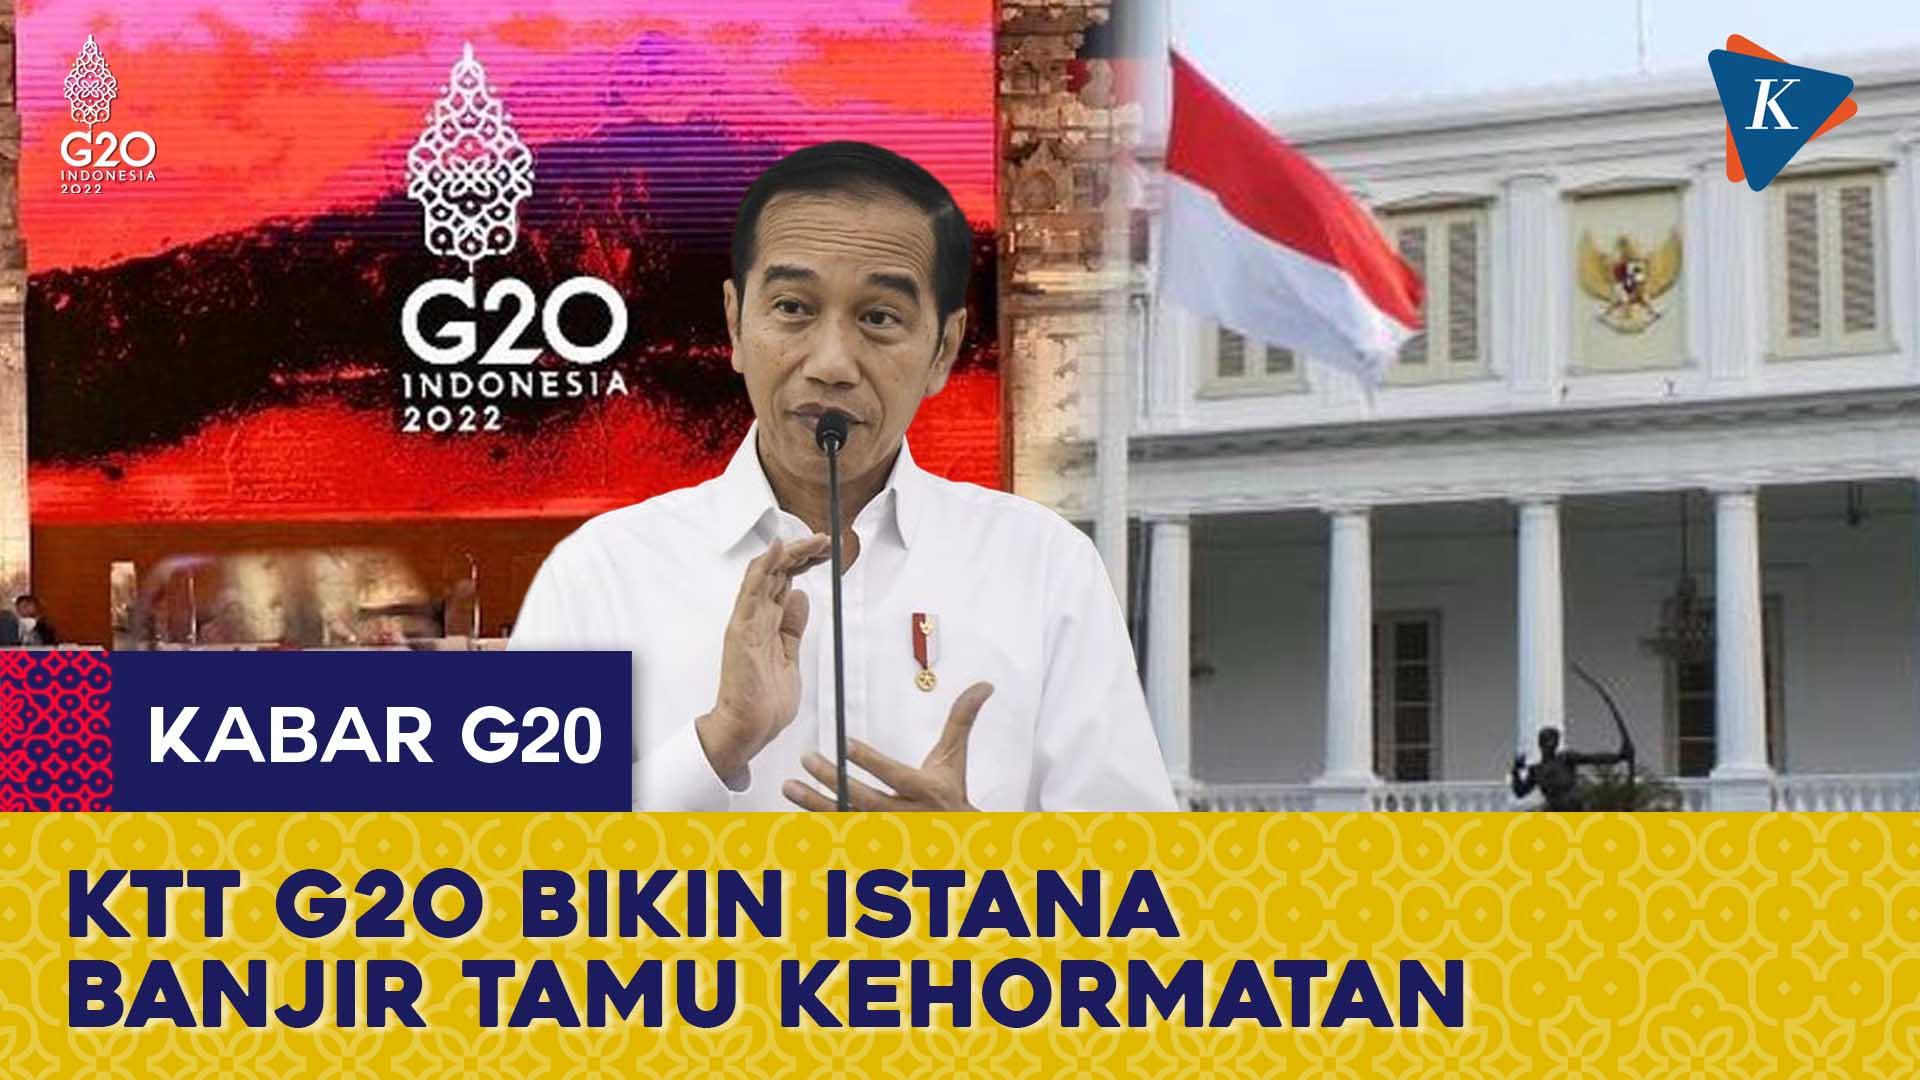 Banyak Kepala Negara Ingin Ketemu Jokowi di G20, Istana Akui Kesulitan Atur Jadwal